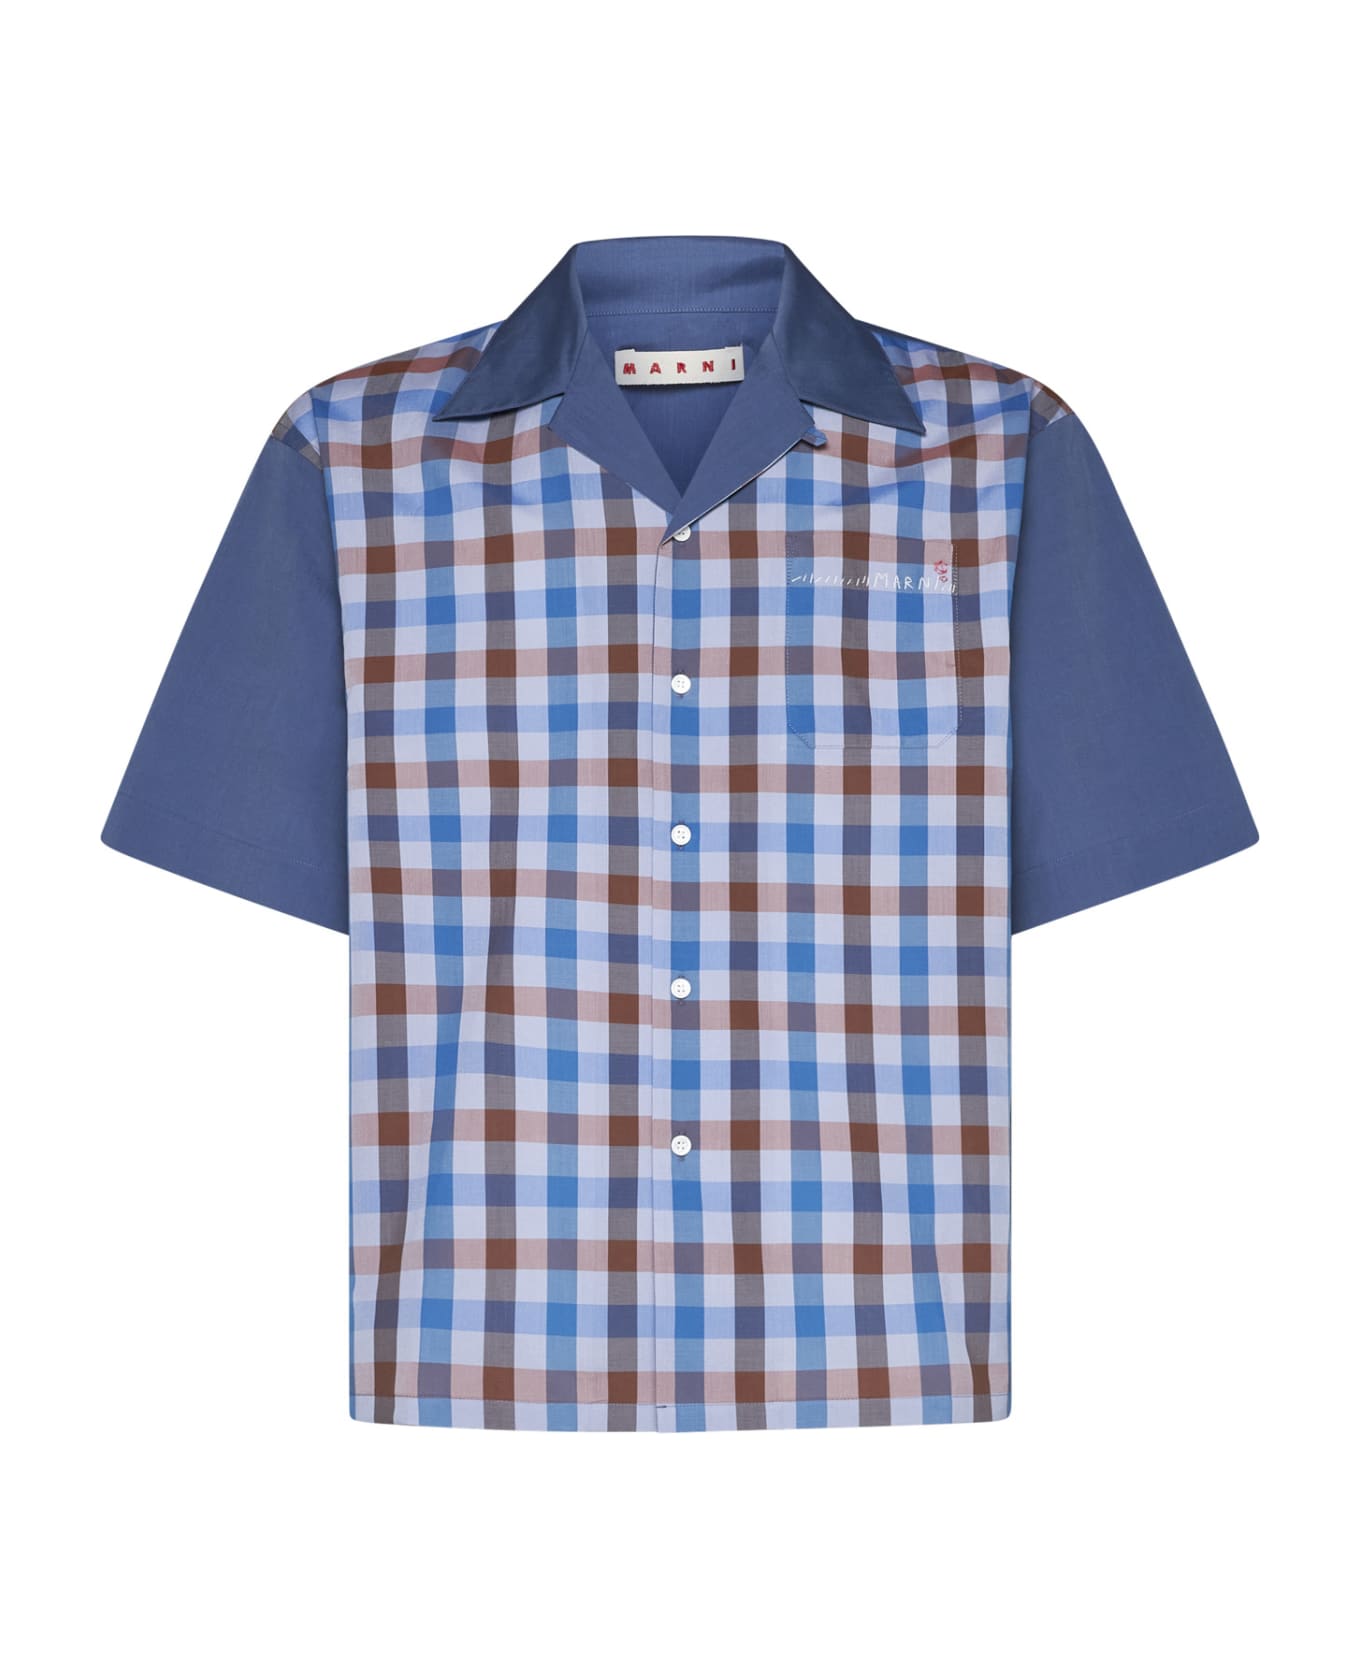 Marni Shirt - Blu シャツ